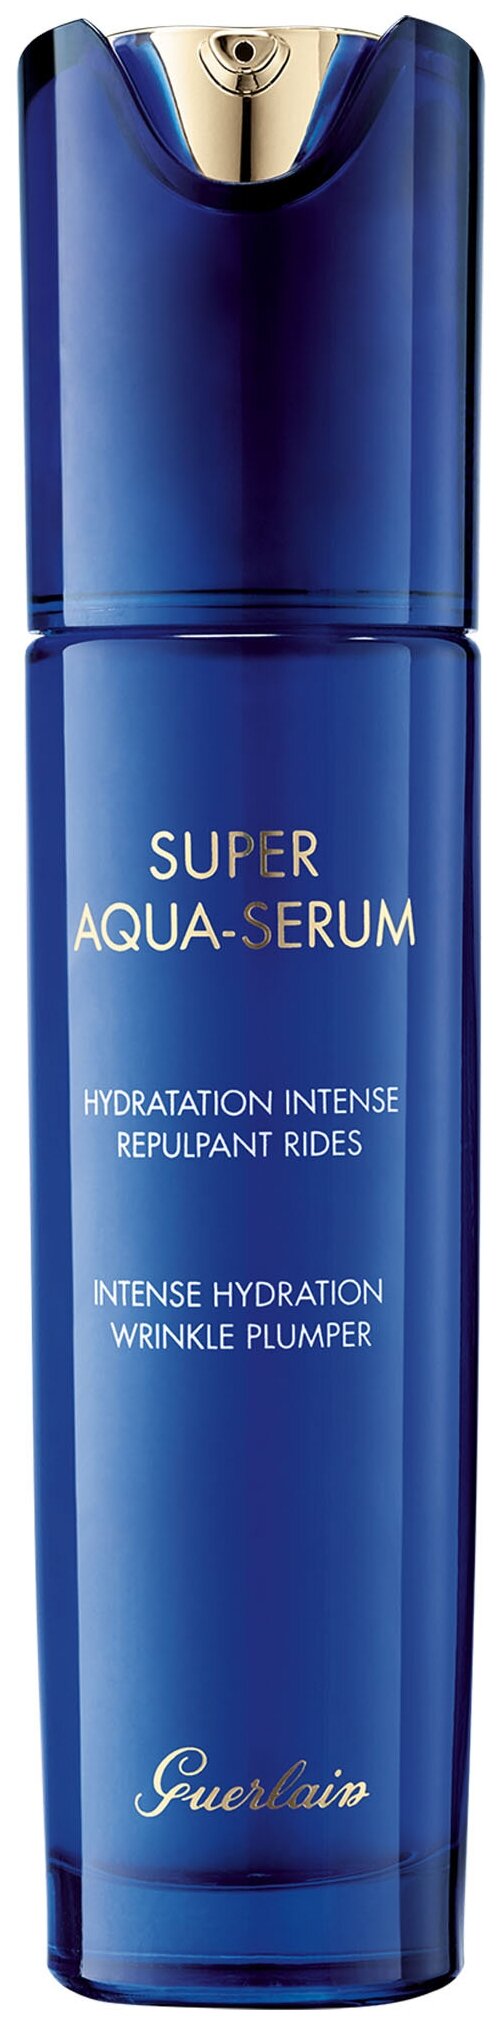 Guerlain Super Aqua-Serum интенсивная увлажняющая сыворотка для лица, 50 мл